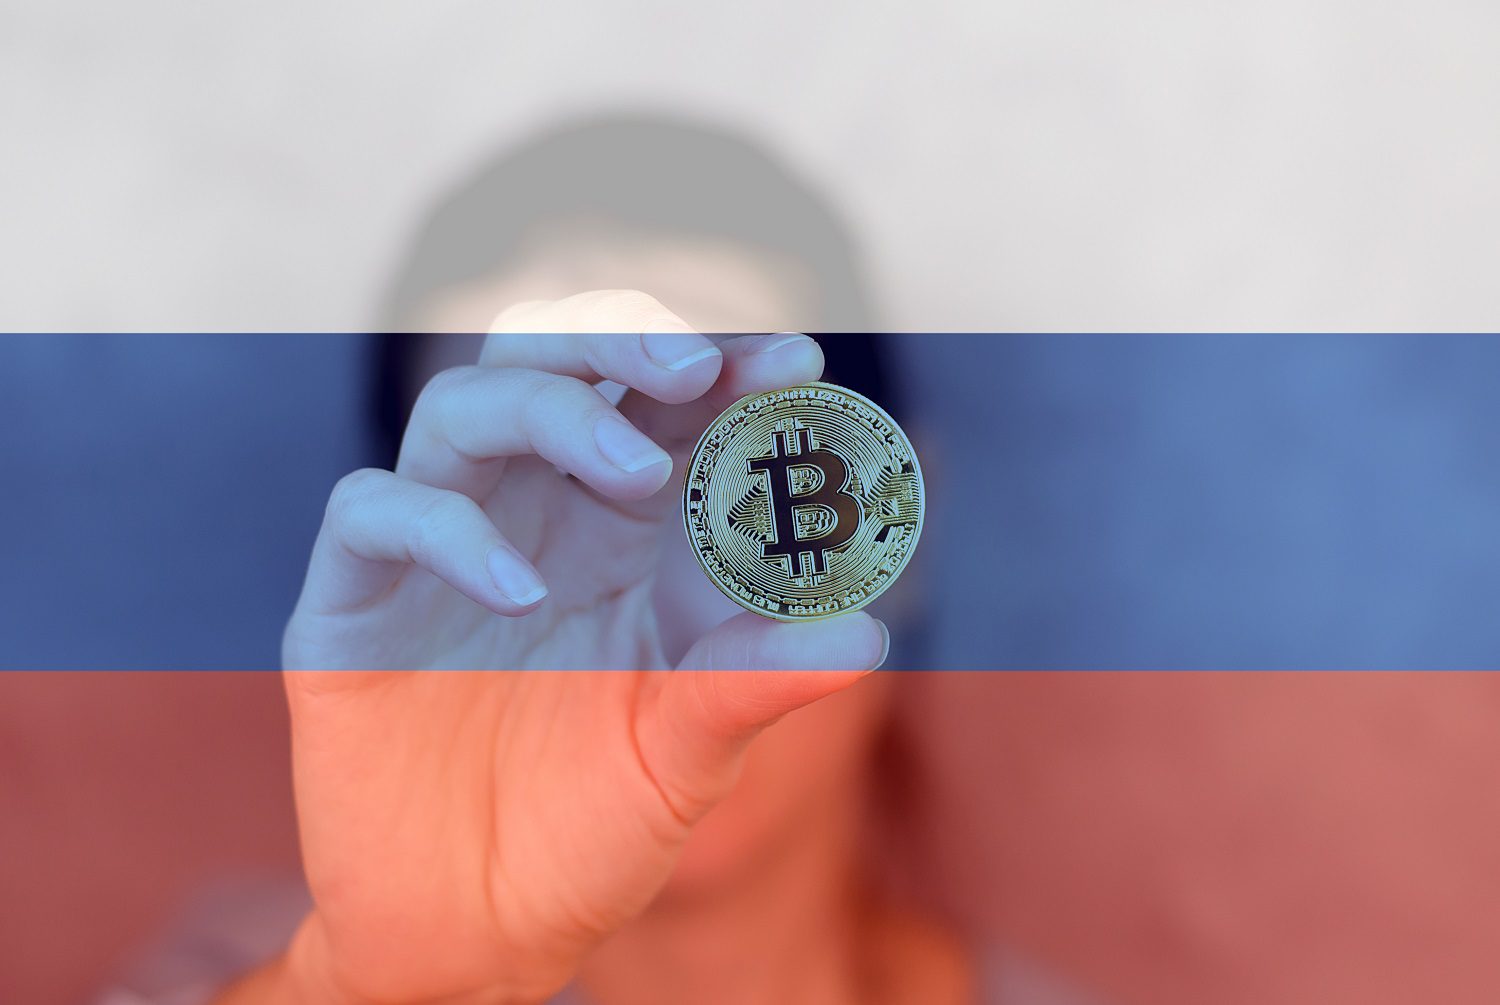 Una persona sostiene una ficha de metal destinada a representar Bitcoin contra el fondo de la bandera rusa.